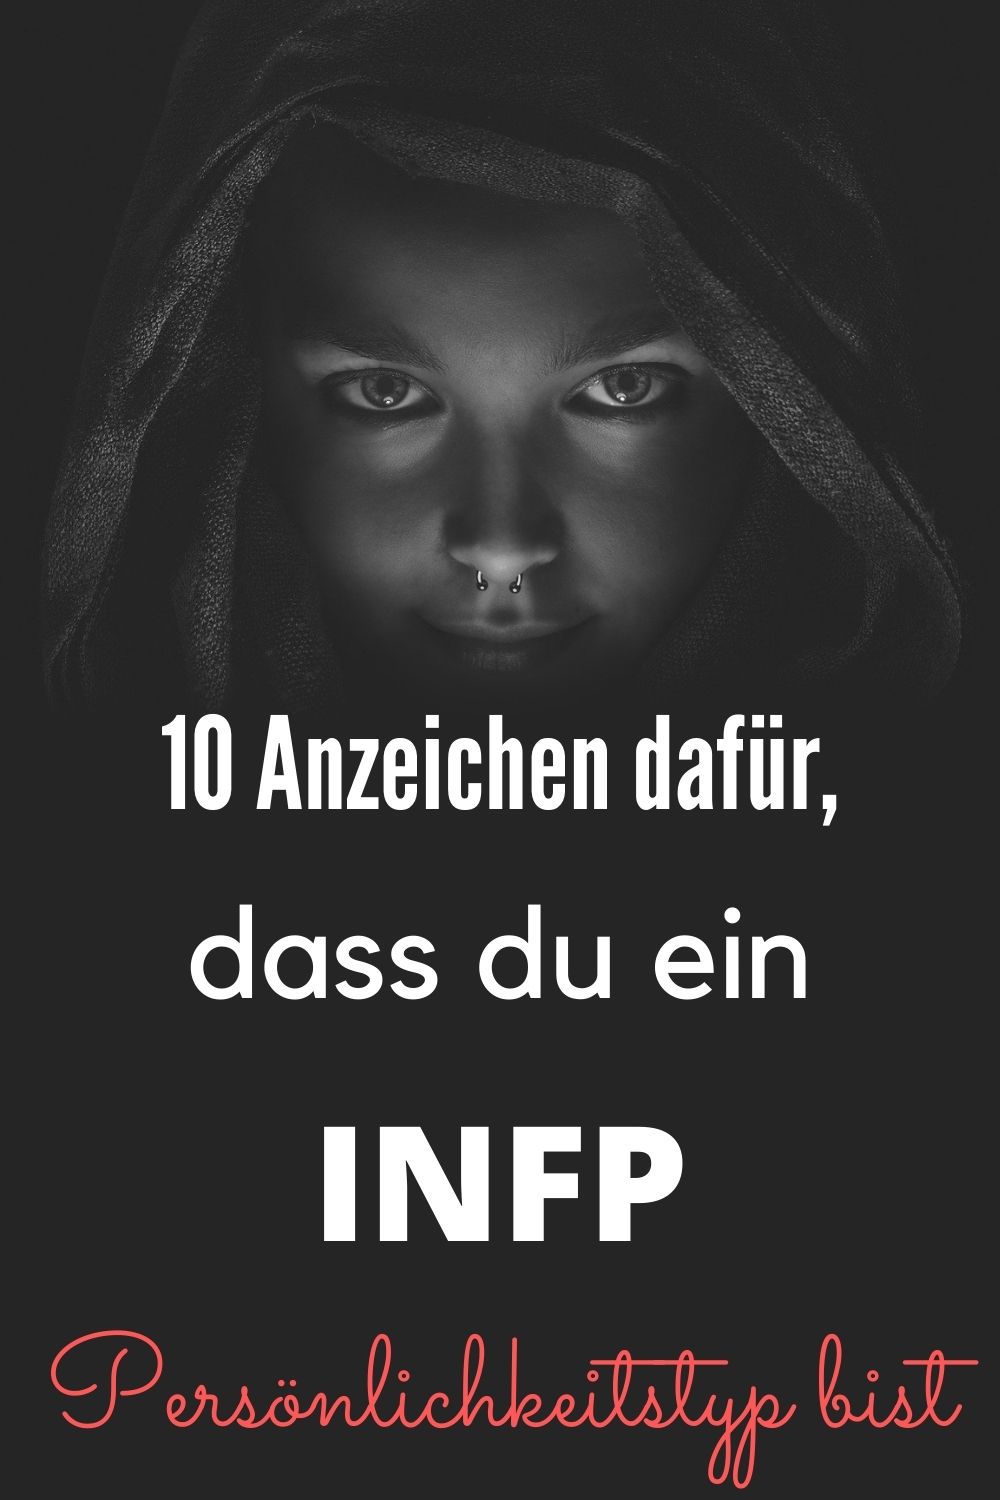 10-Anzeichen-dafür-dass-du-ein-INFP-Persönlichkeitstyp-bist